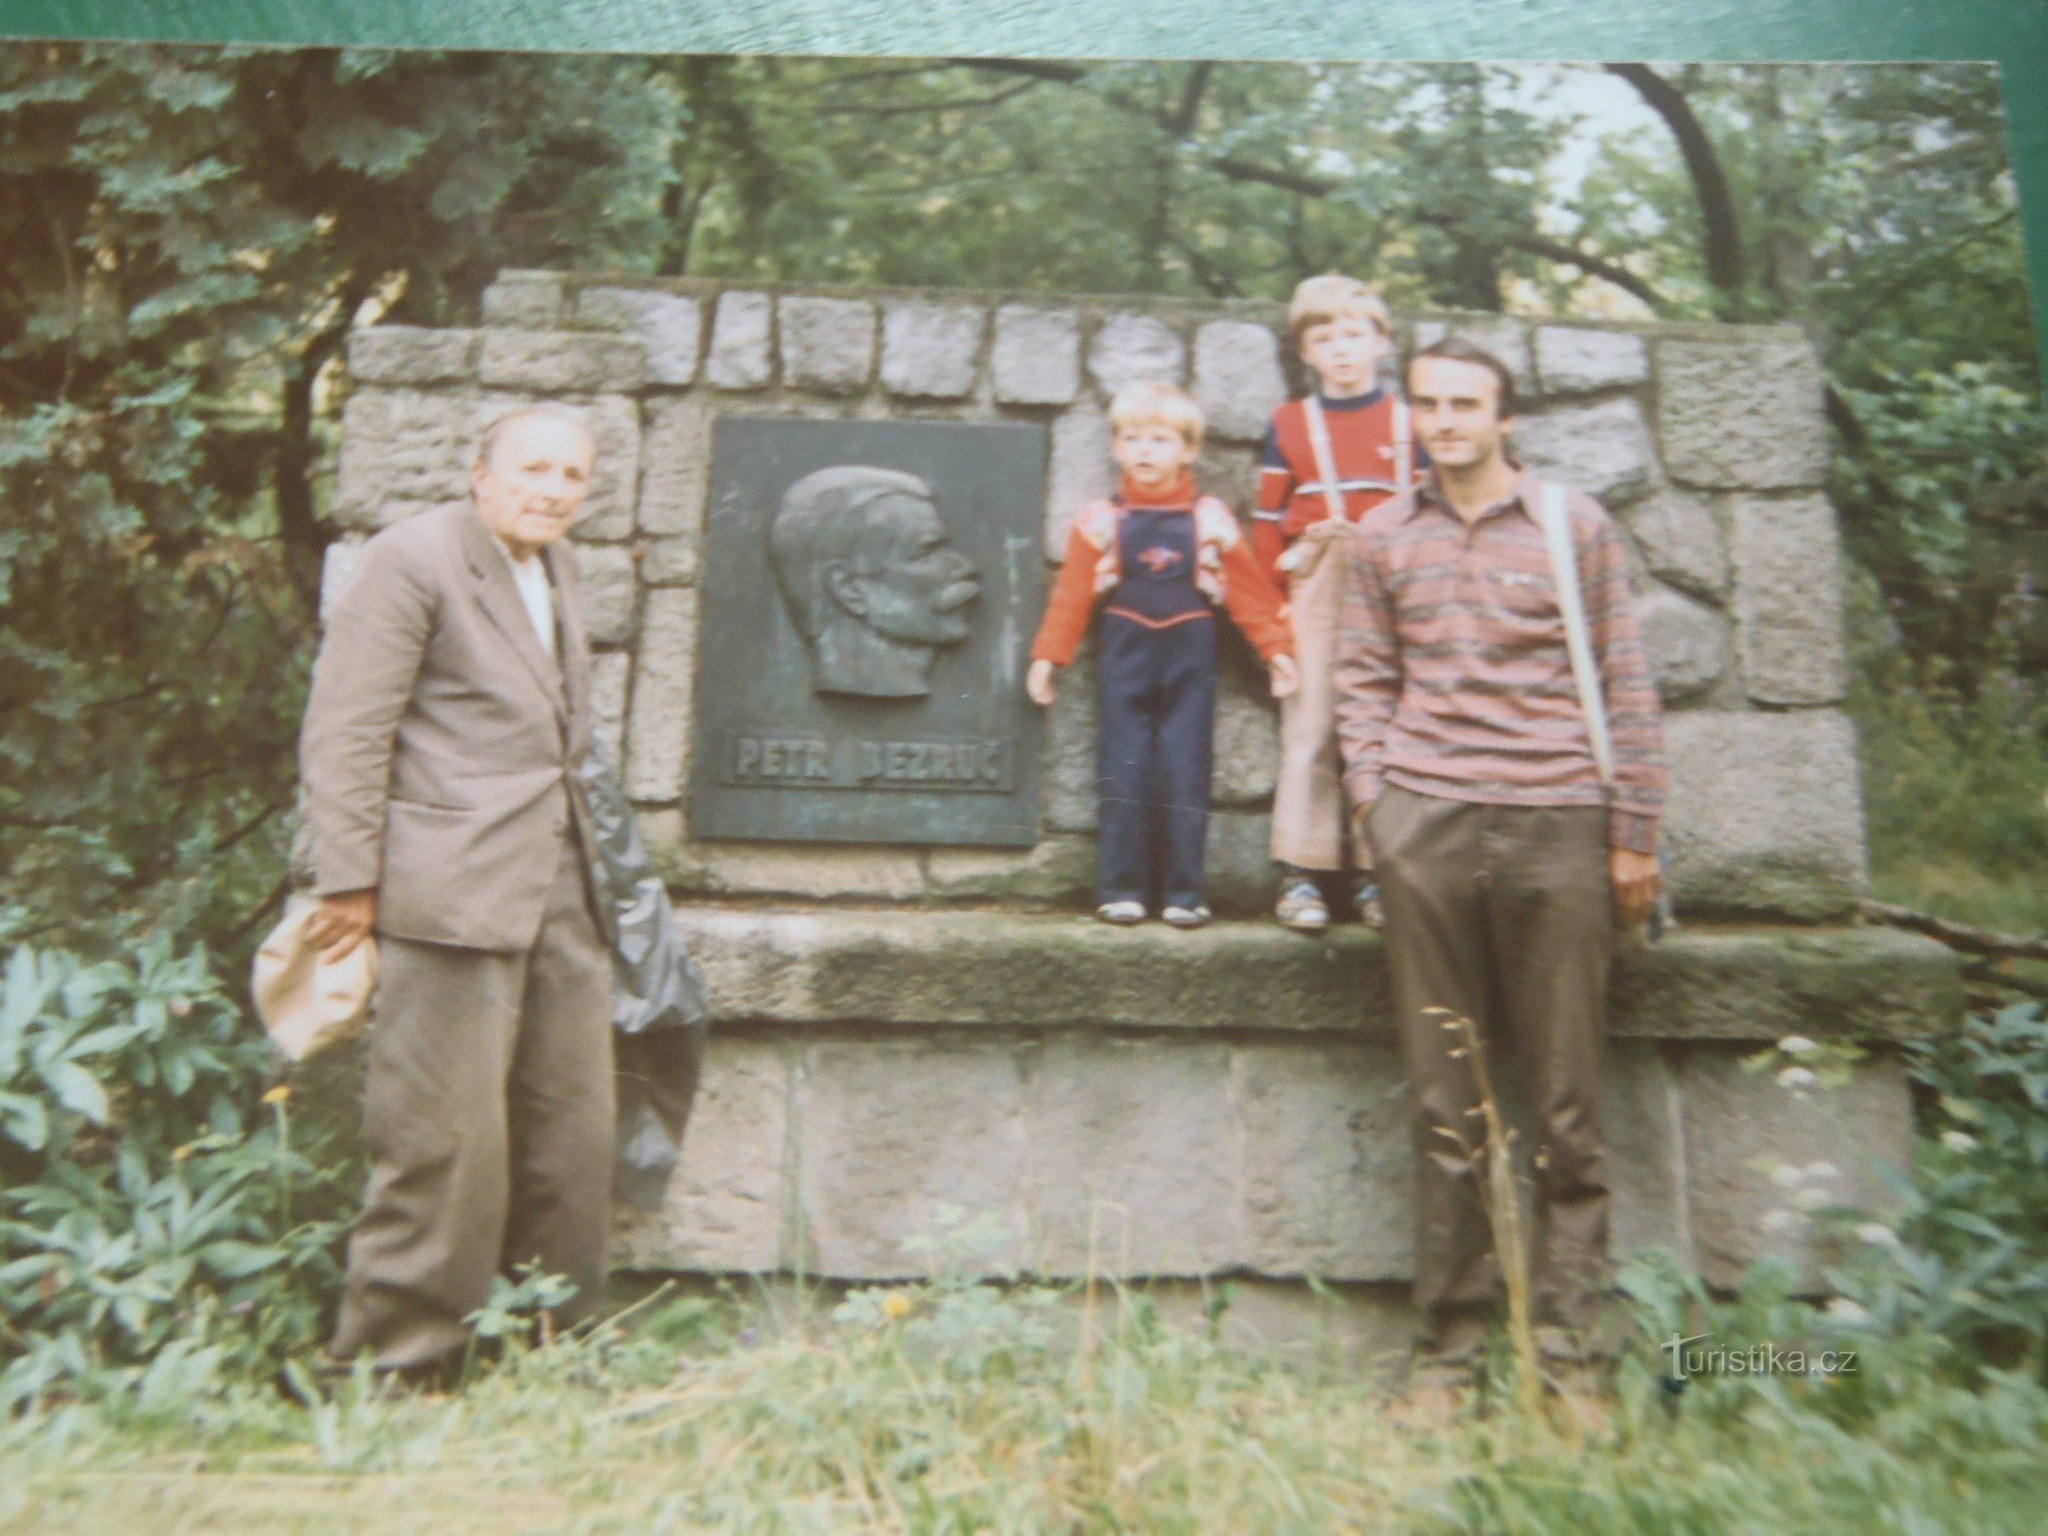 Samme sted, år 1987. Min far Otakar Vašek, nevø Petr Bezruč og barnebarn Anto